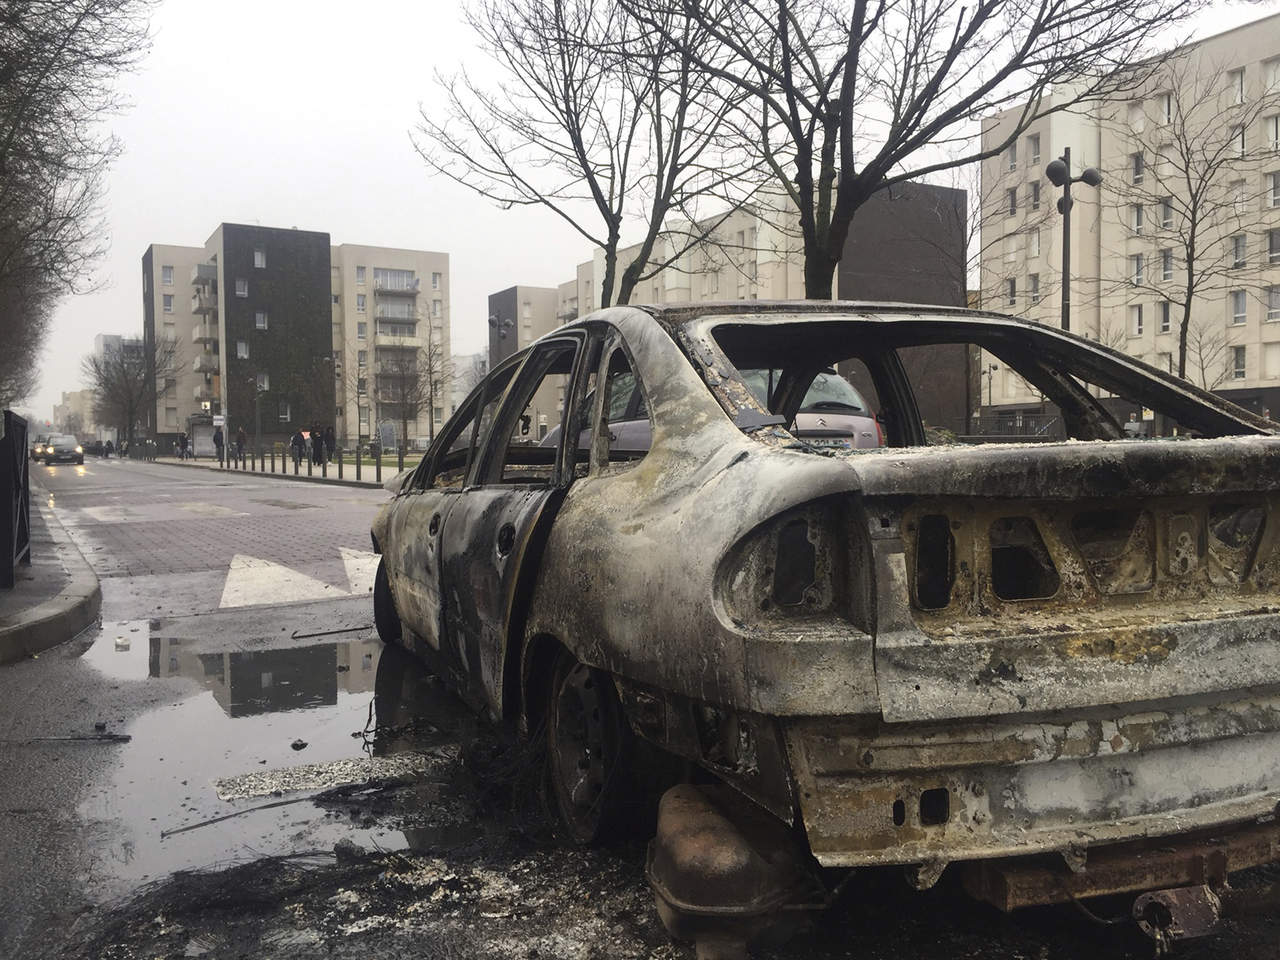 Varios autos fueron incendiados y ardieron durante la noche, mientras los bomberos trataban de limitar los daños. (AP)